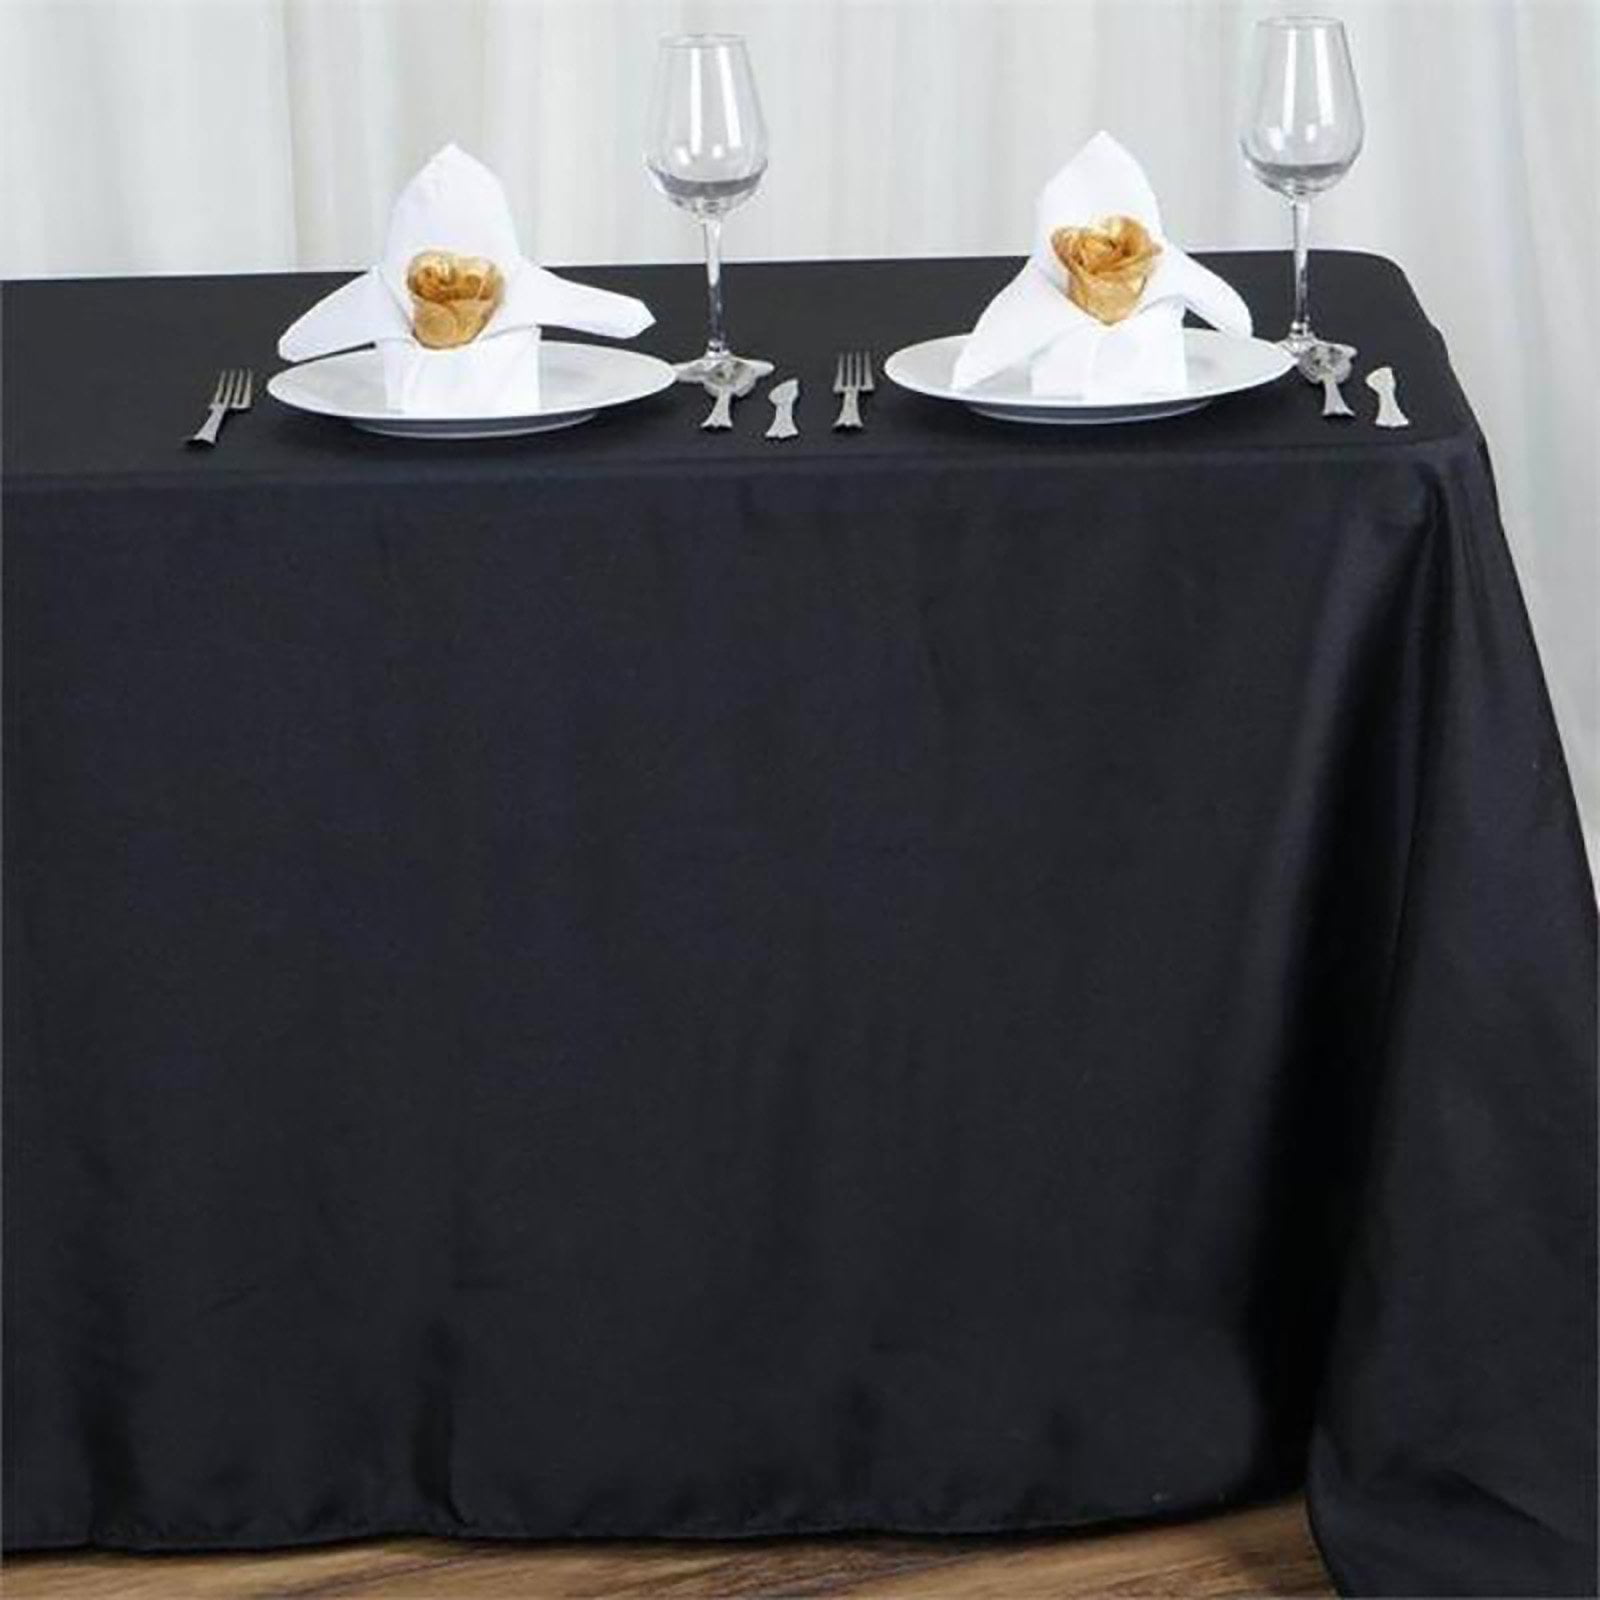 Wholesale linen tablecloths